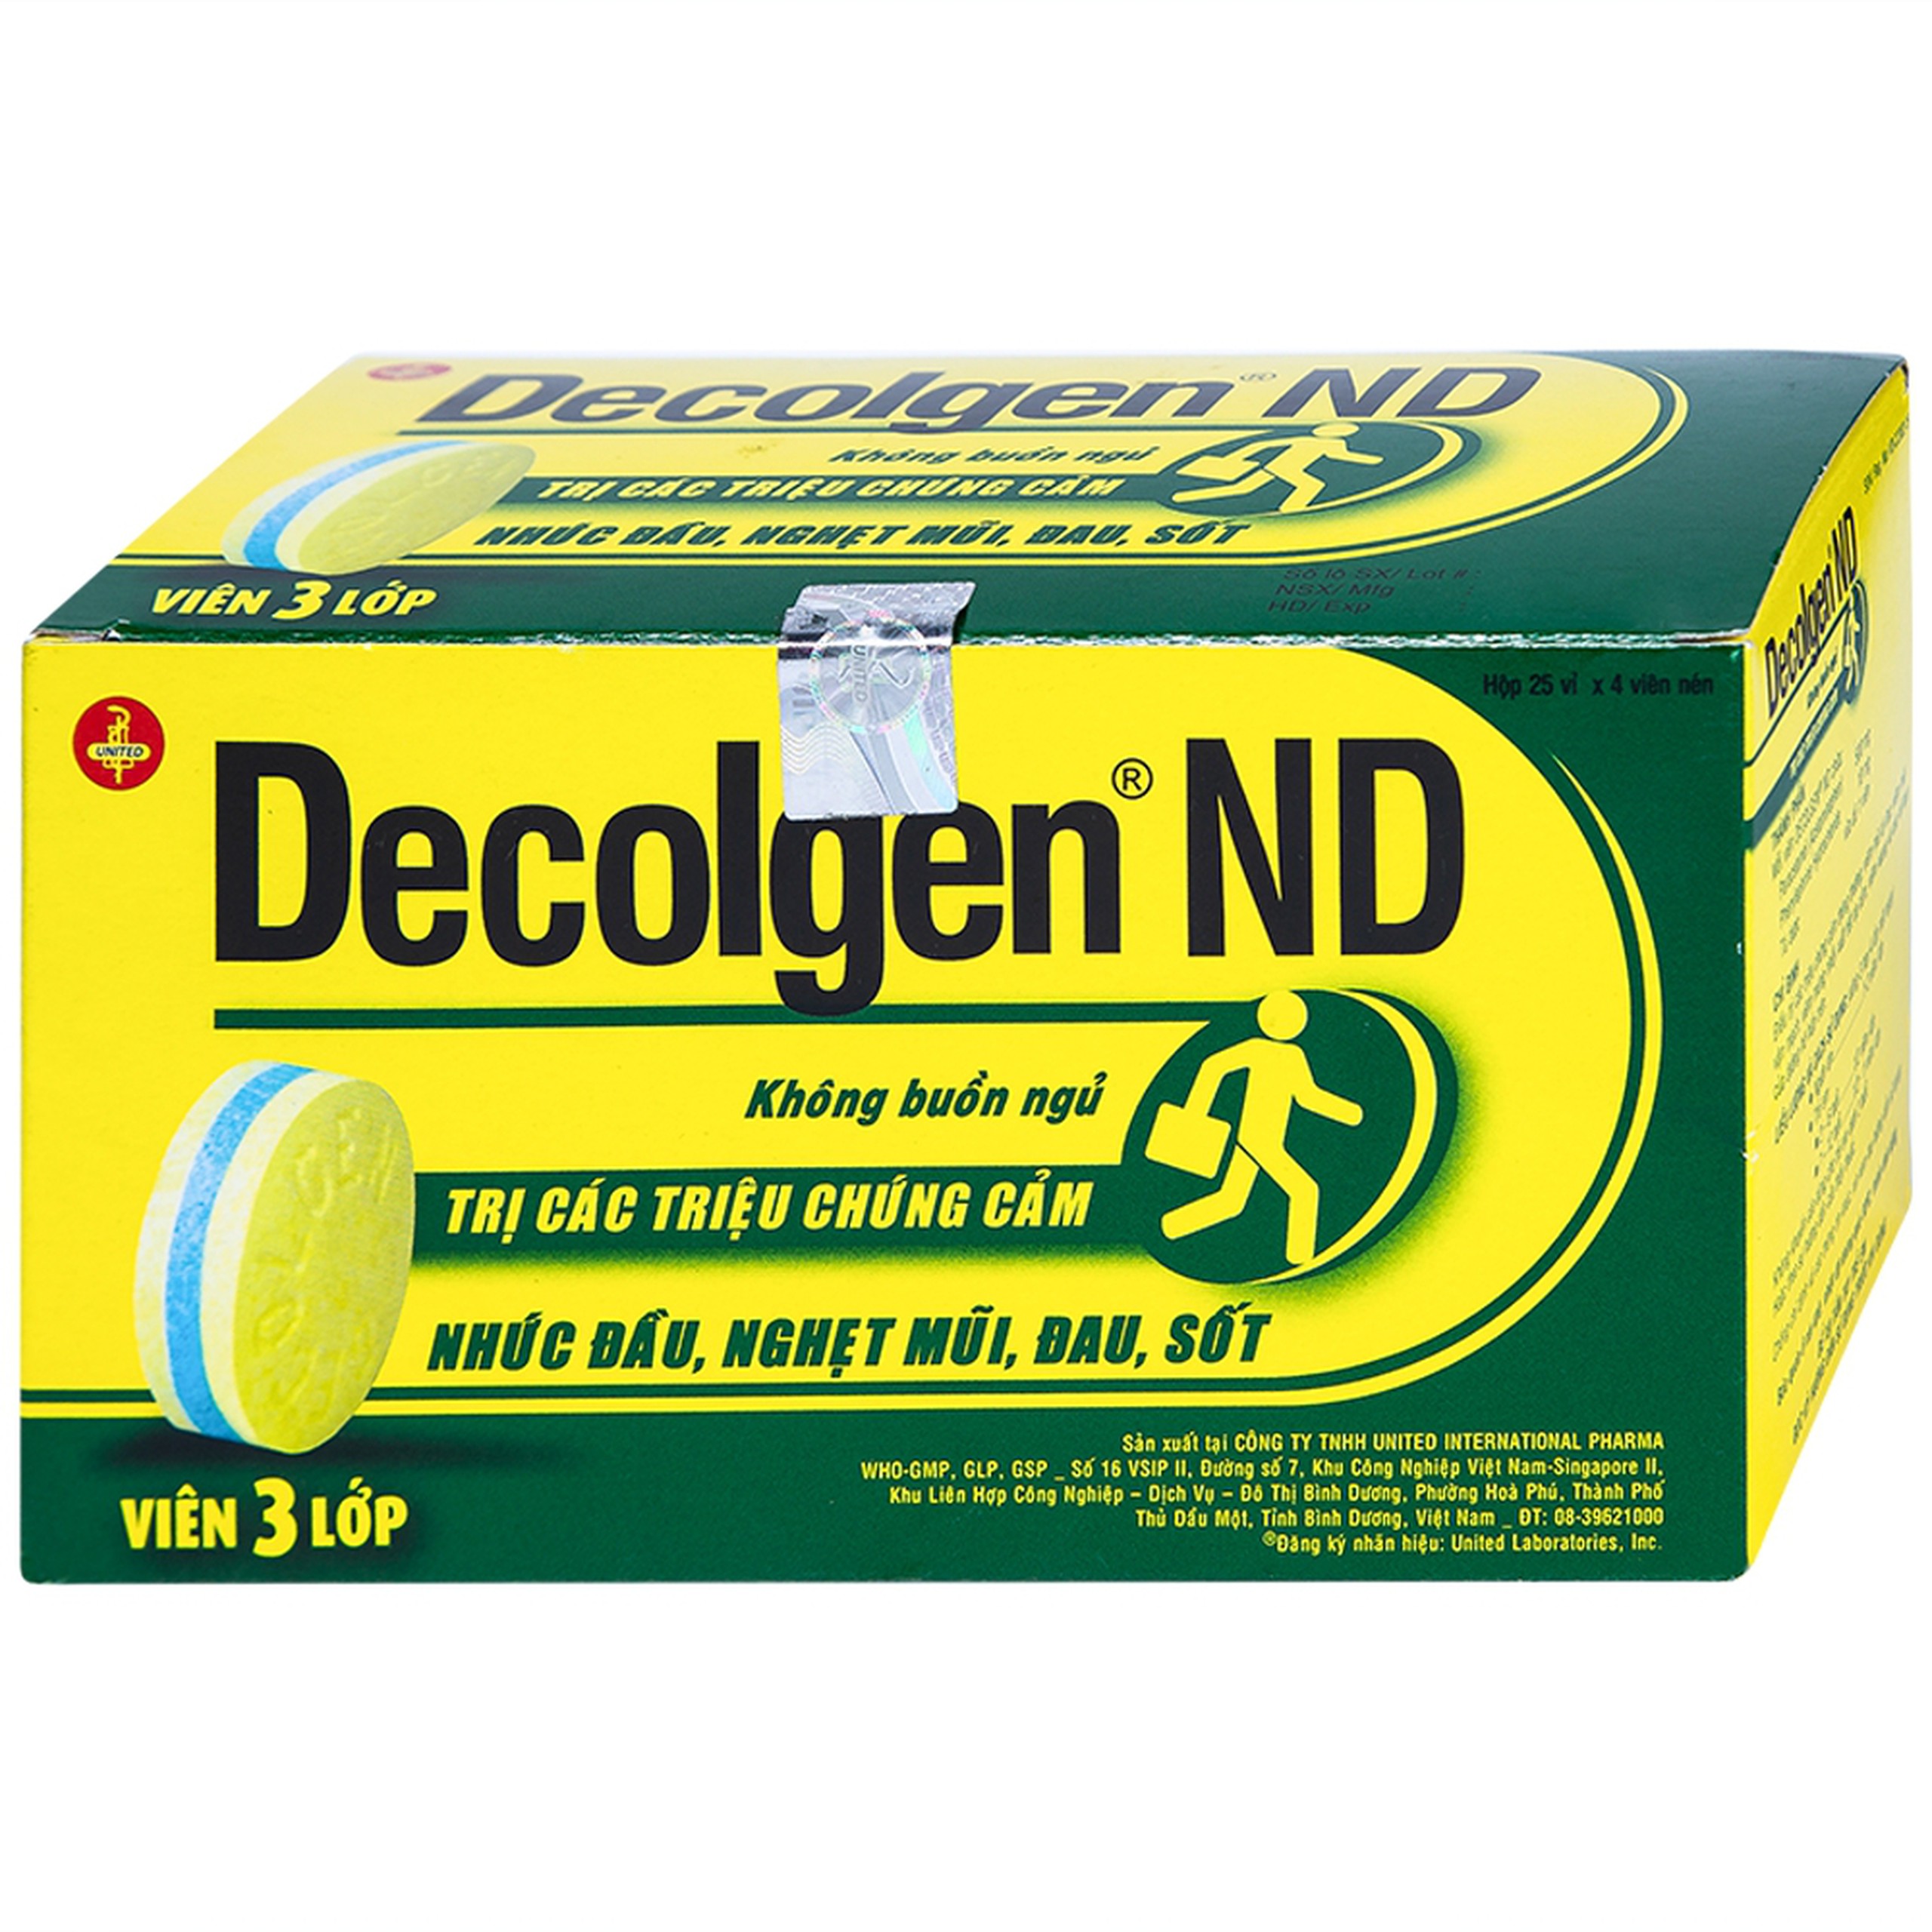 Thuốc Decolgen ND United điều trị các triệu chứng cảm thông thường, viêm mũi dị ứng (12 vỉ x 10 viên)